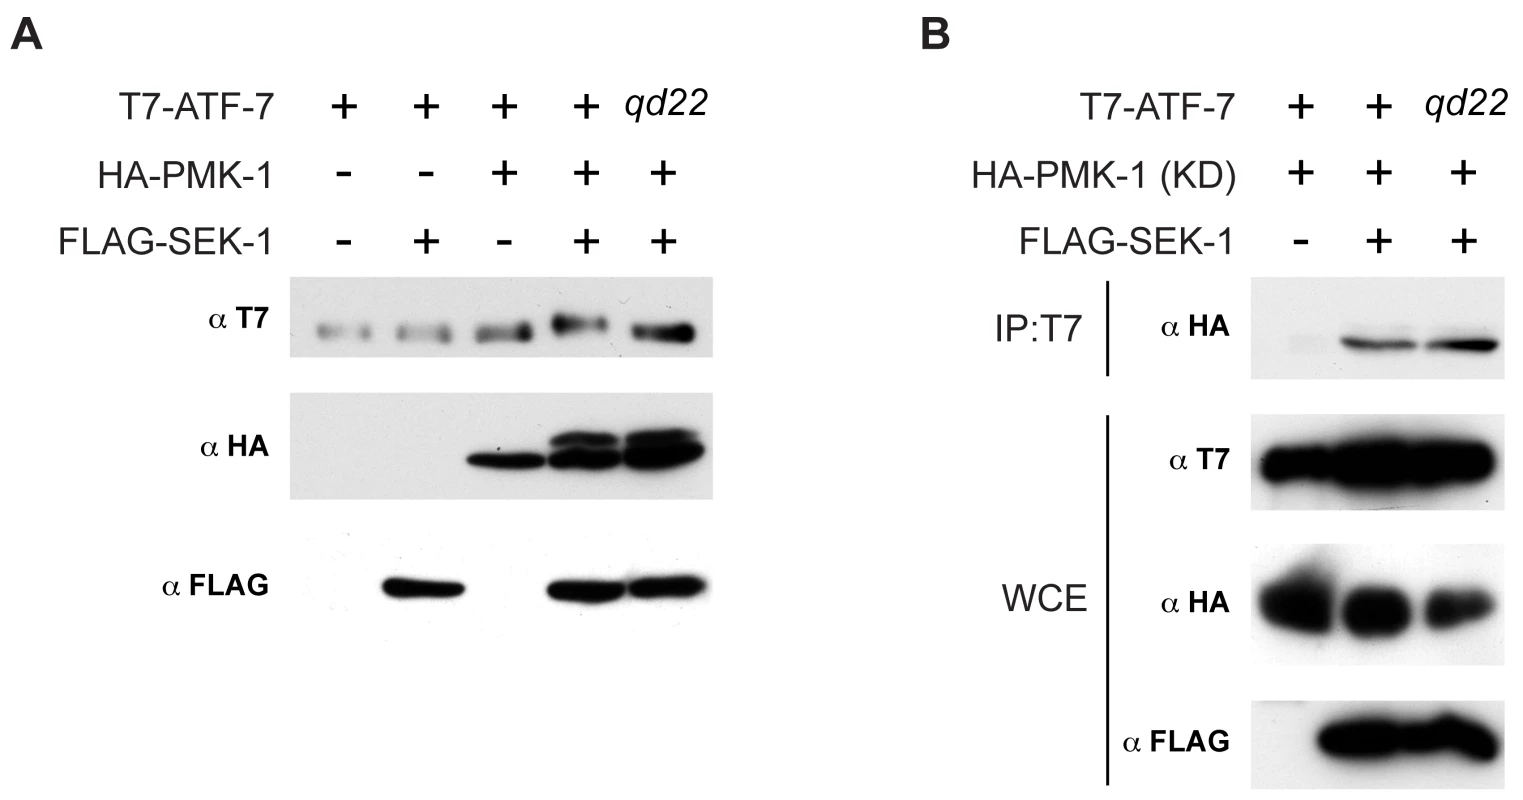 Phosphorylation of ATF-7 by PMK-1.